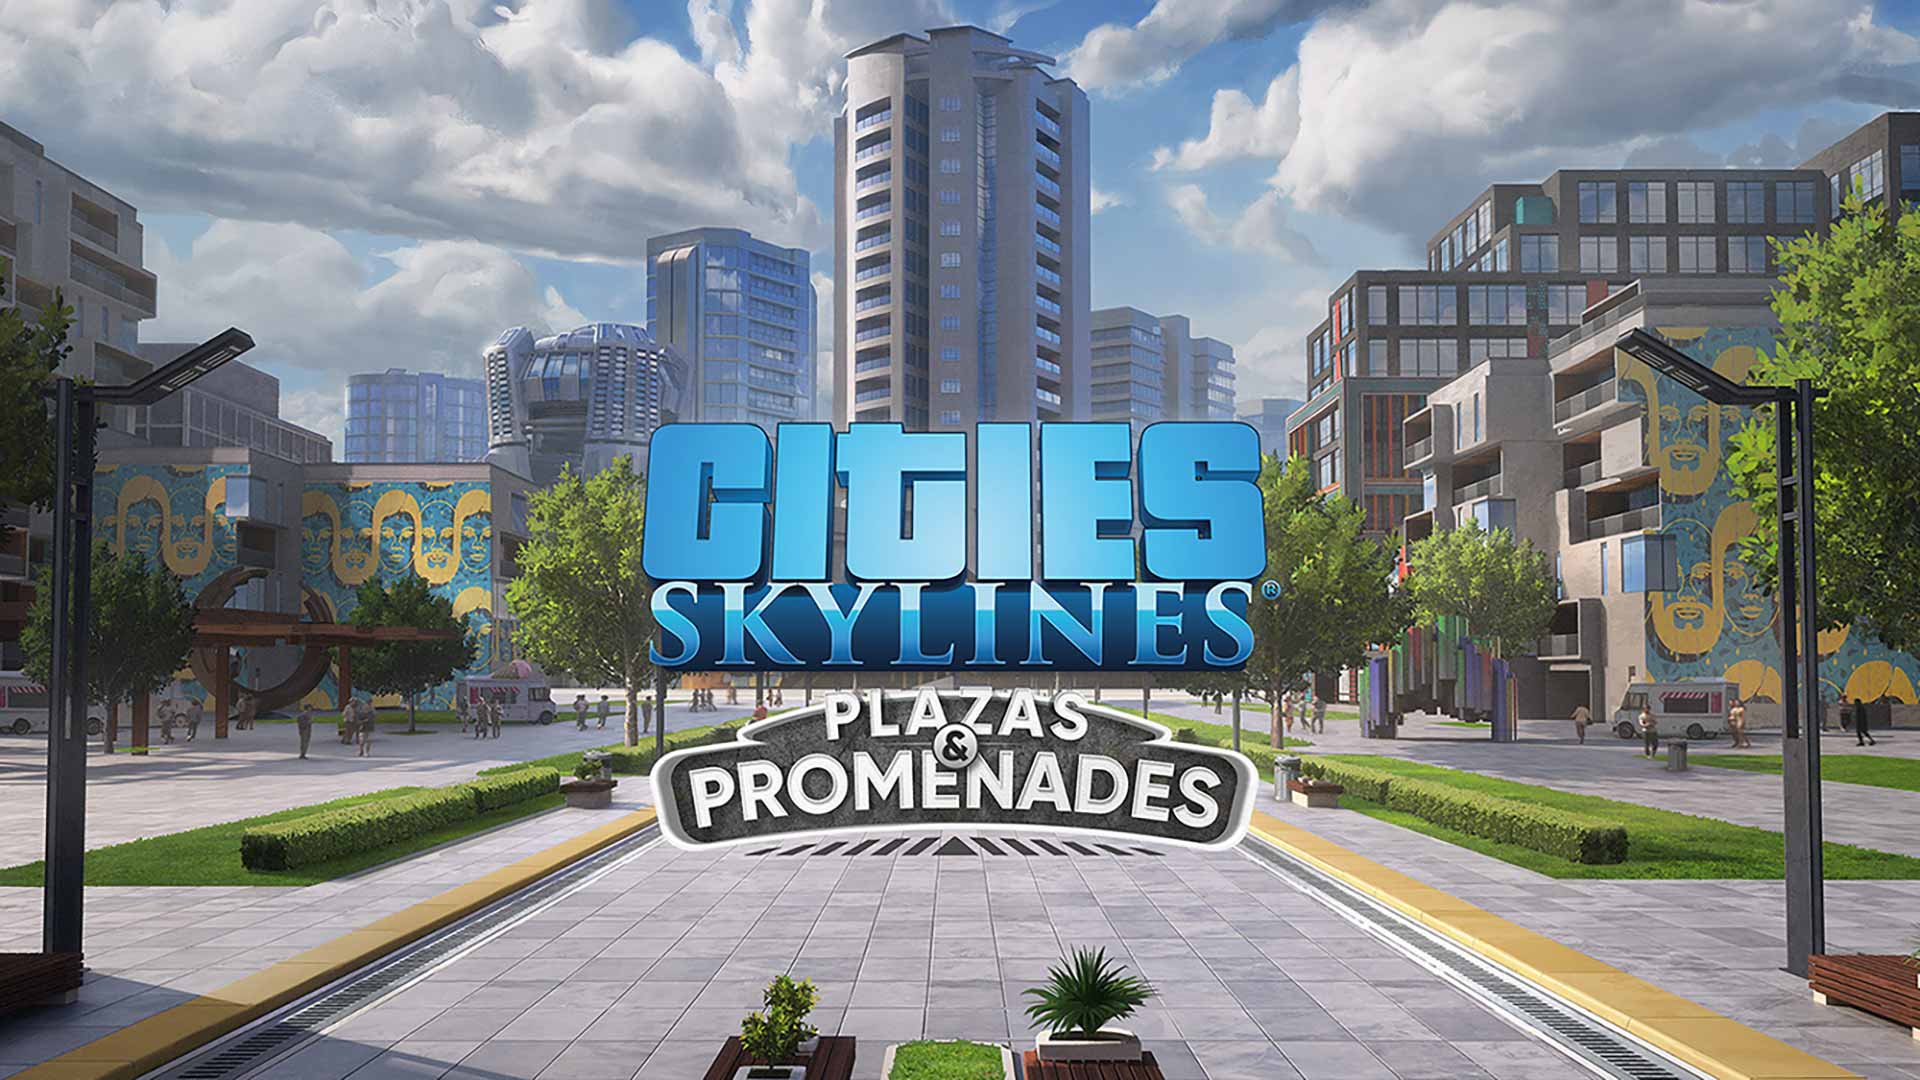 انتشار تریلر جدید بسته الحاقی Plazas & Promenades بازی Cities Skylines